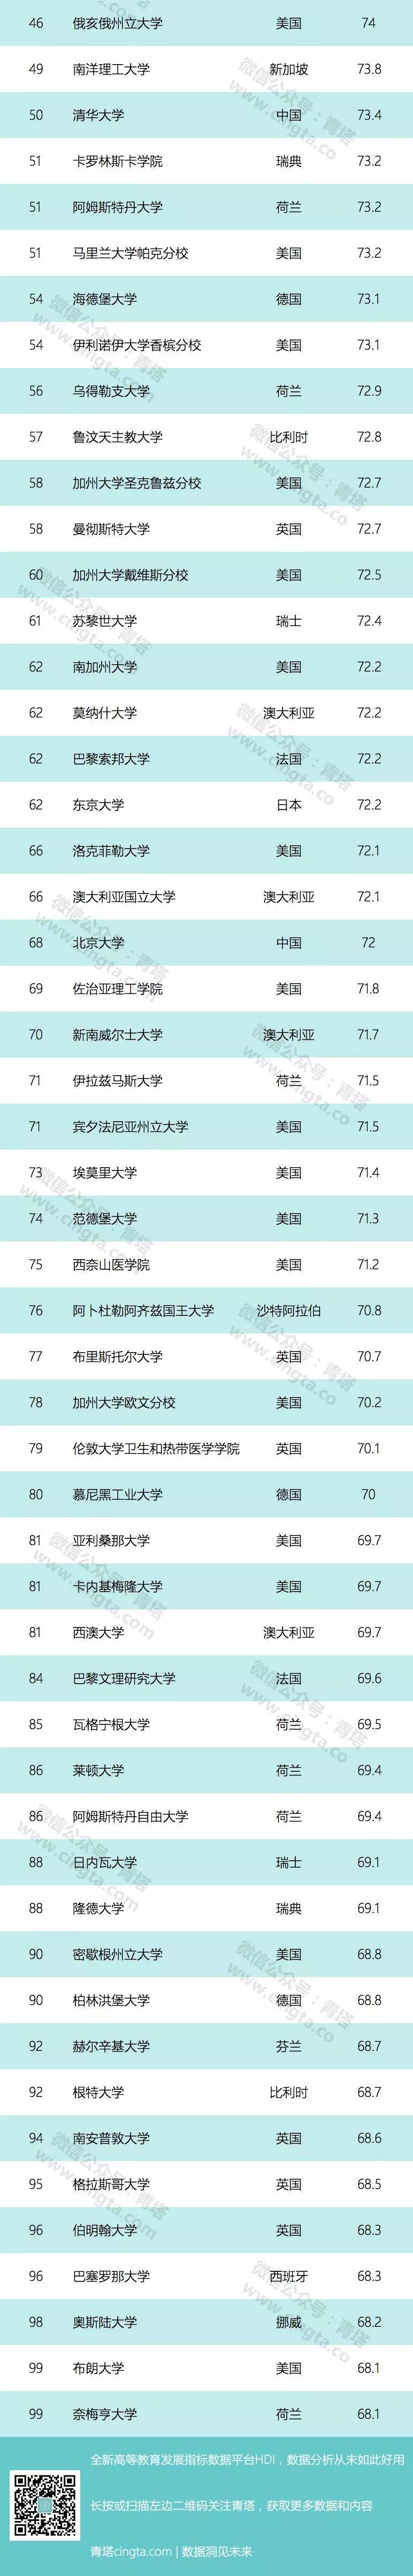 USNews 2019世界大学排行榜出炉 161所中国高线入围5